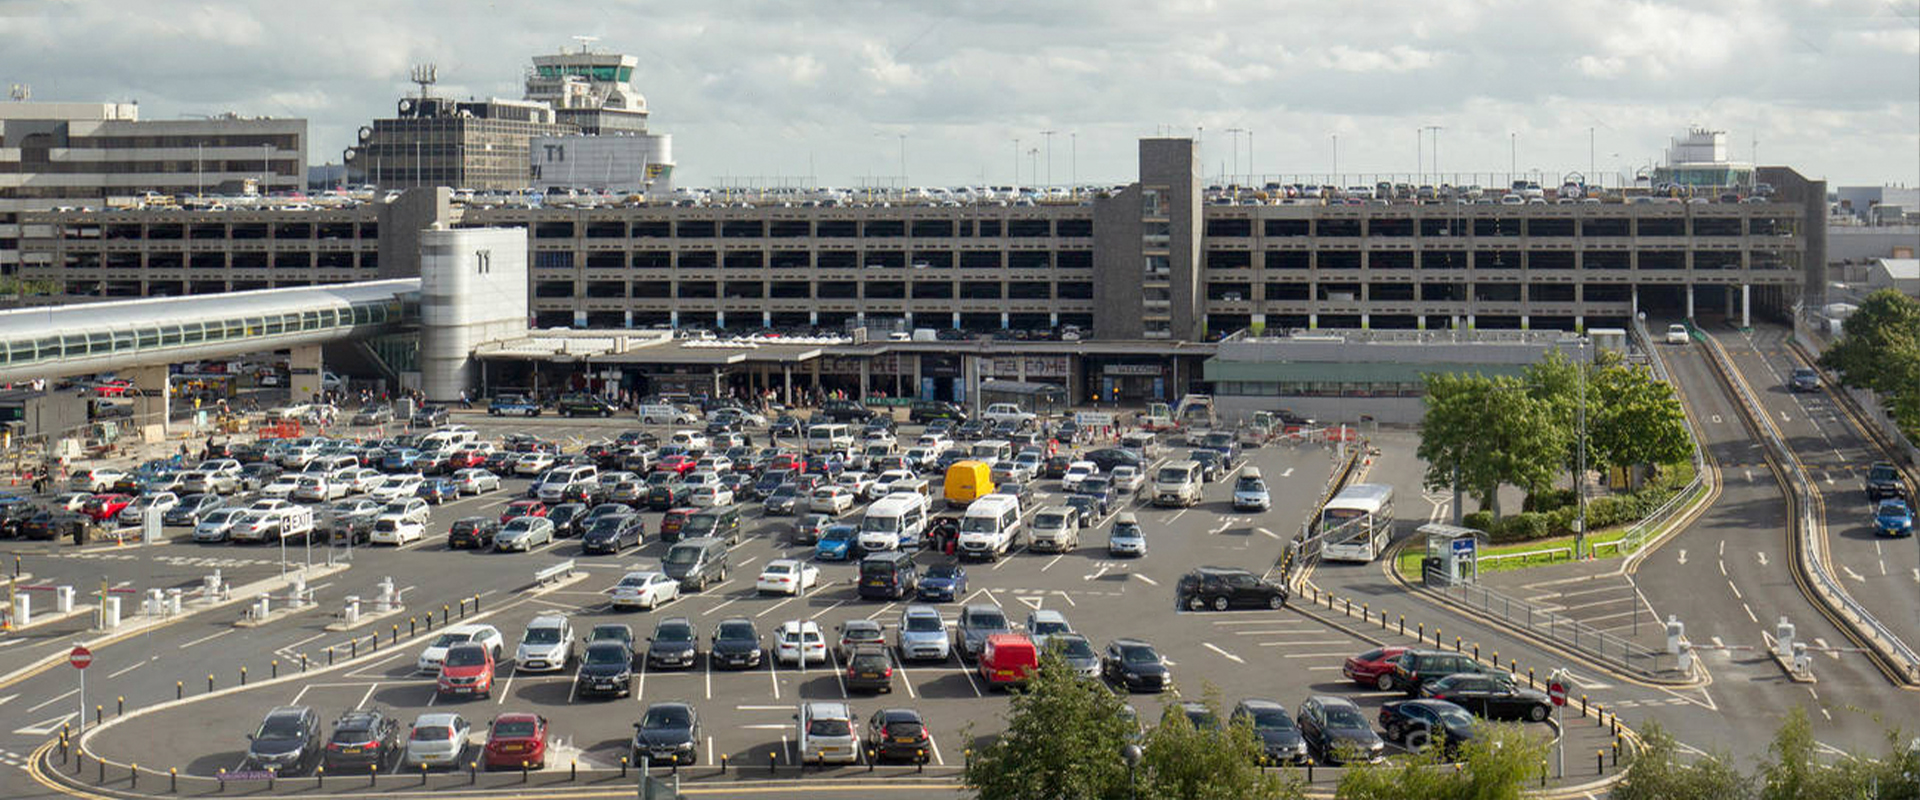 Aéroport de Manchester: èclairage du parking avec AEC Illuminazione